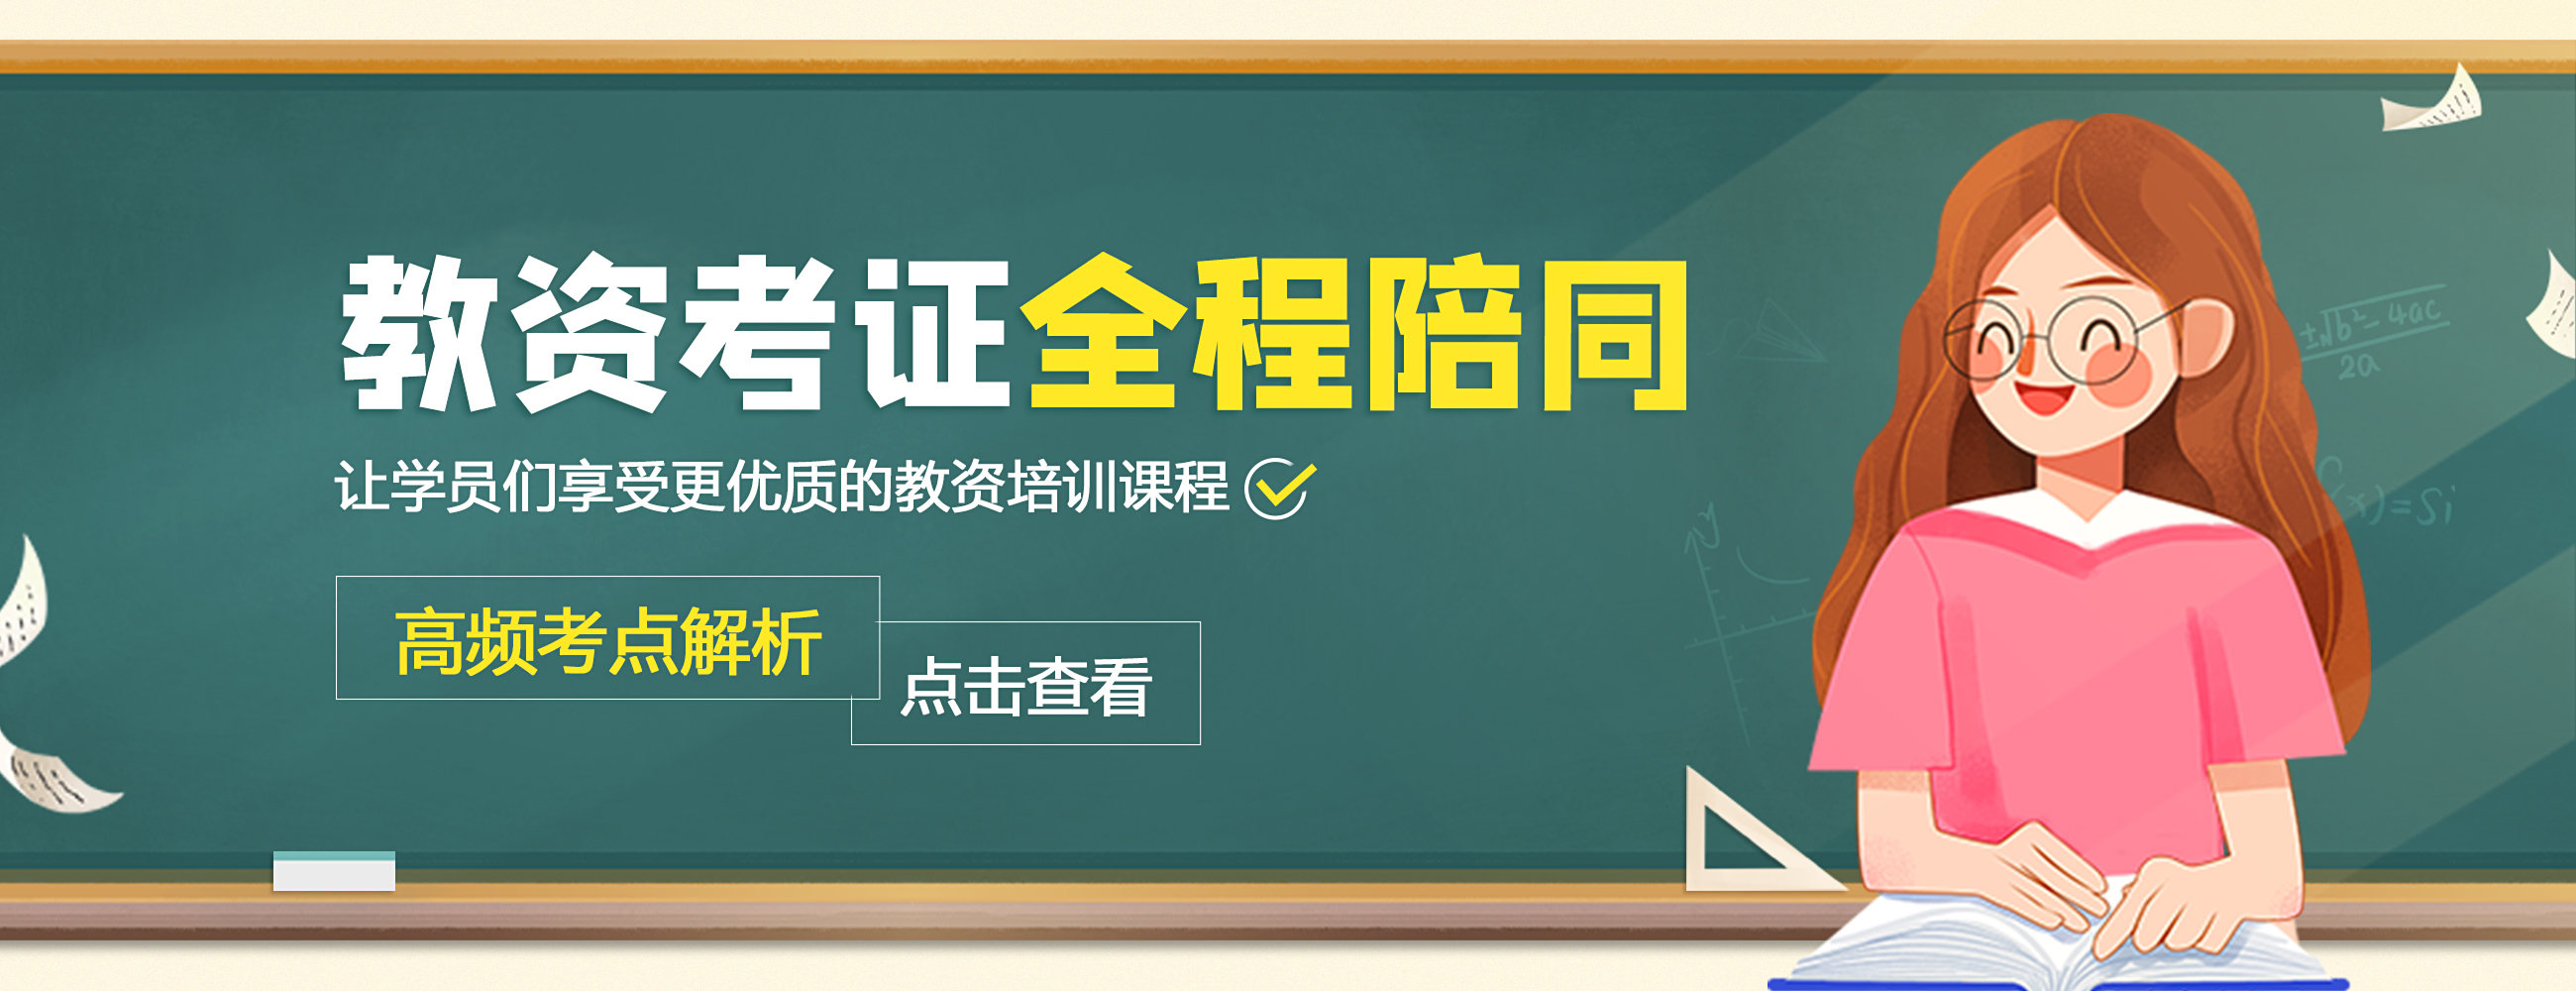 上海俐享教育培训学校banner